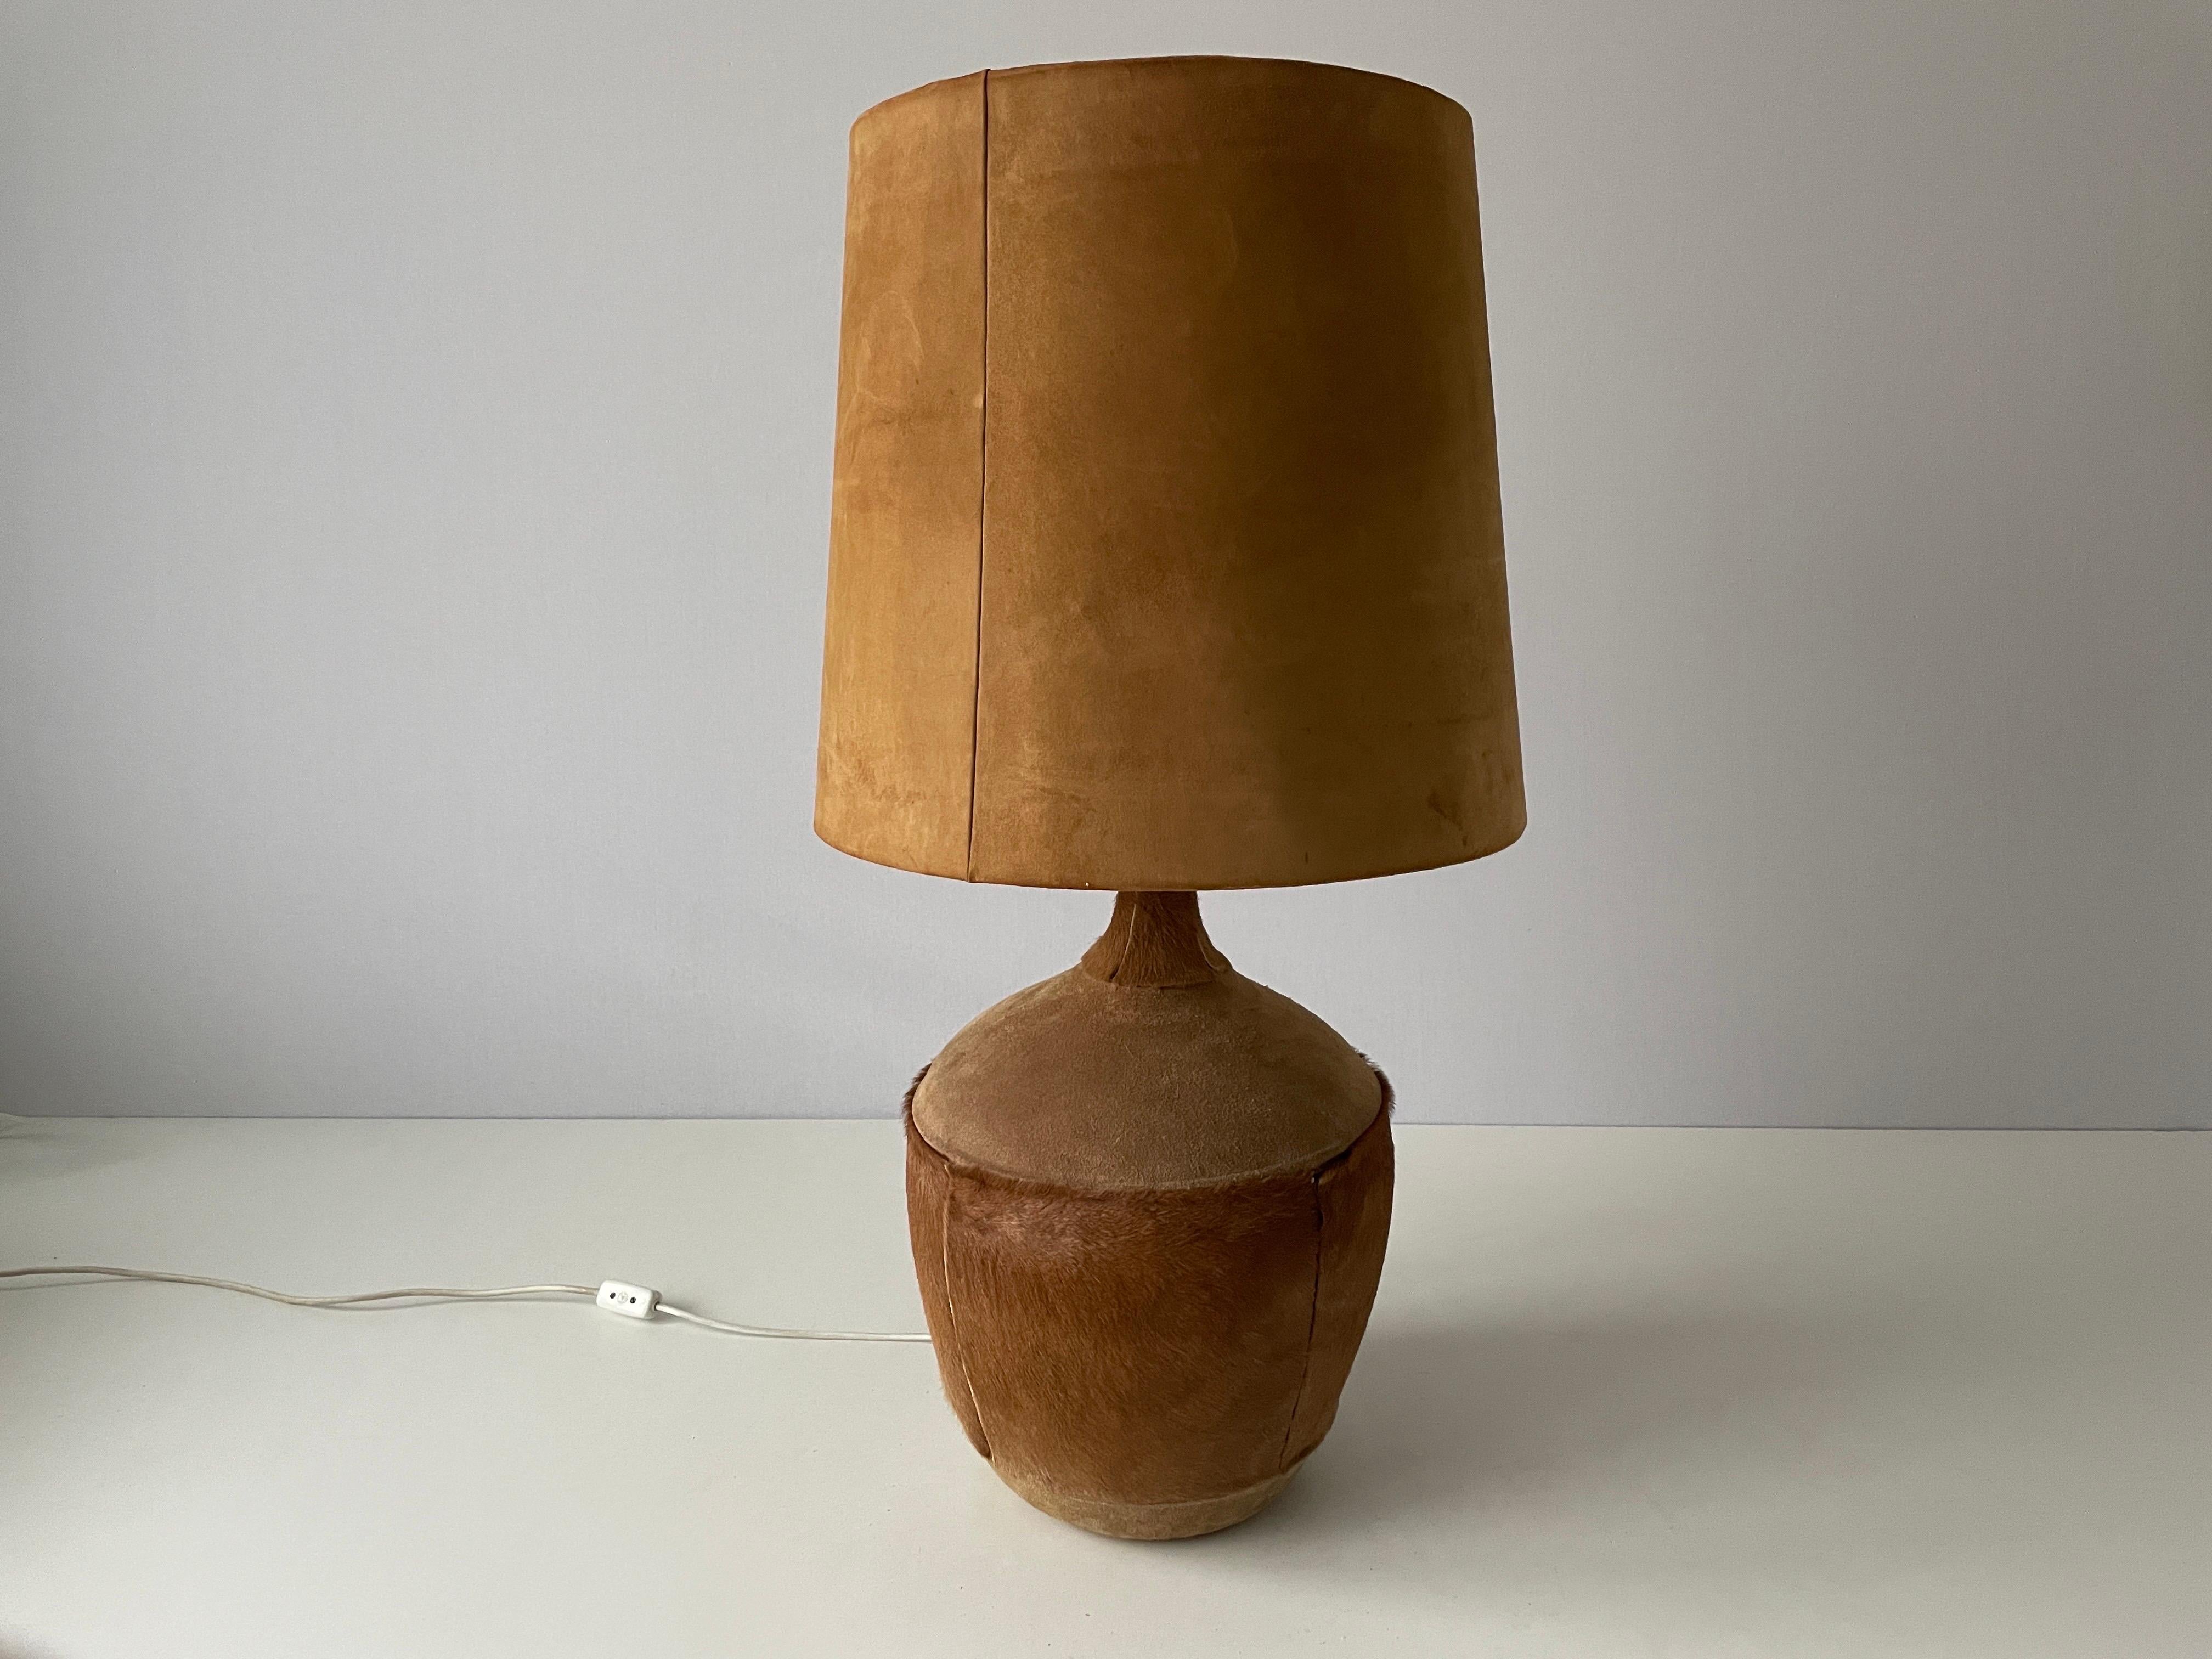 Steh- oder Tischlampe aus braunem Wildleder und Glasschirm, 1960er Jahre, Dänemark

Der Lampenschirm ist in sehr gutem Vintage-Zustand.

Es hat einen europäischen Stecker. Es kann mit Hilfe eines Konverters auf andere Länderstecker umgestellt